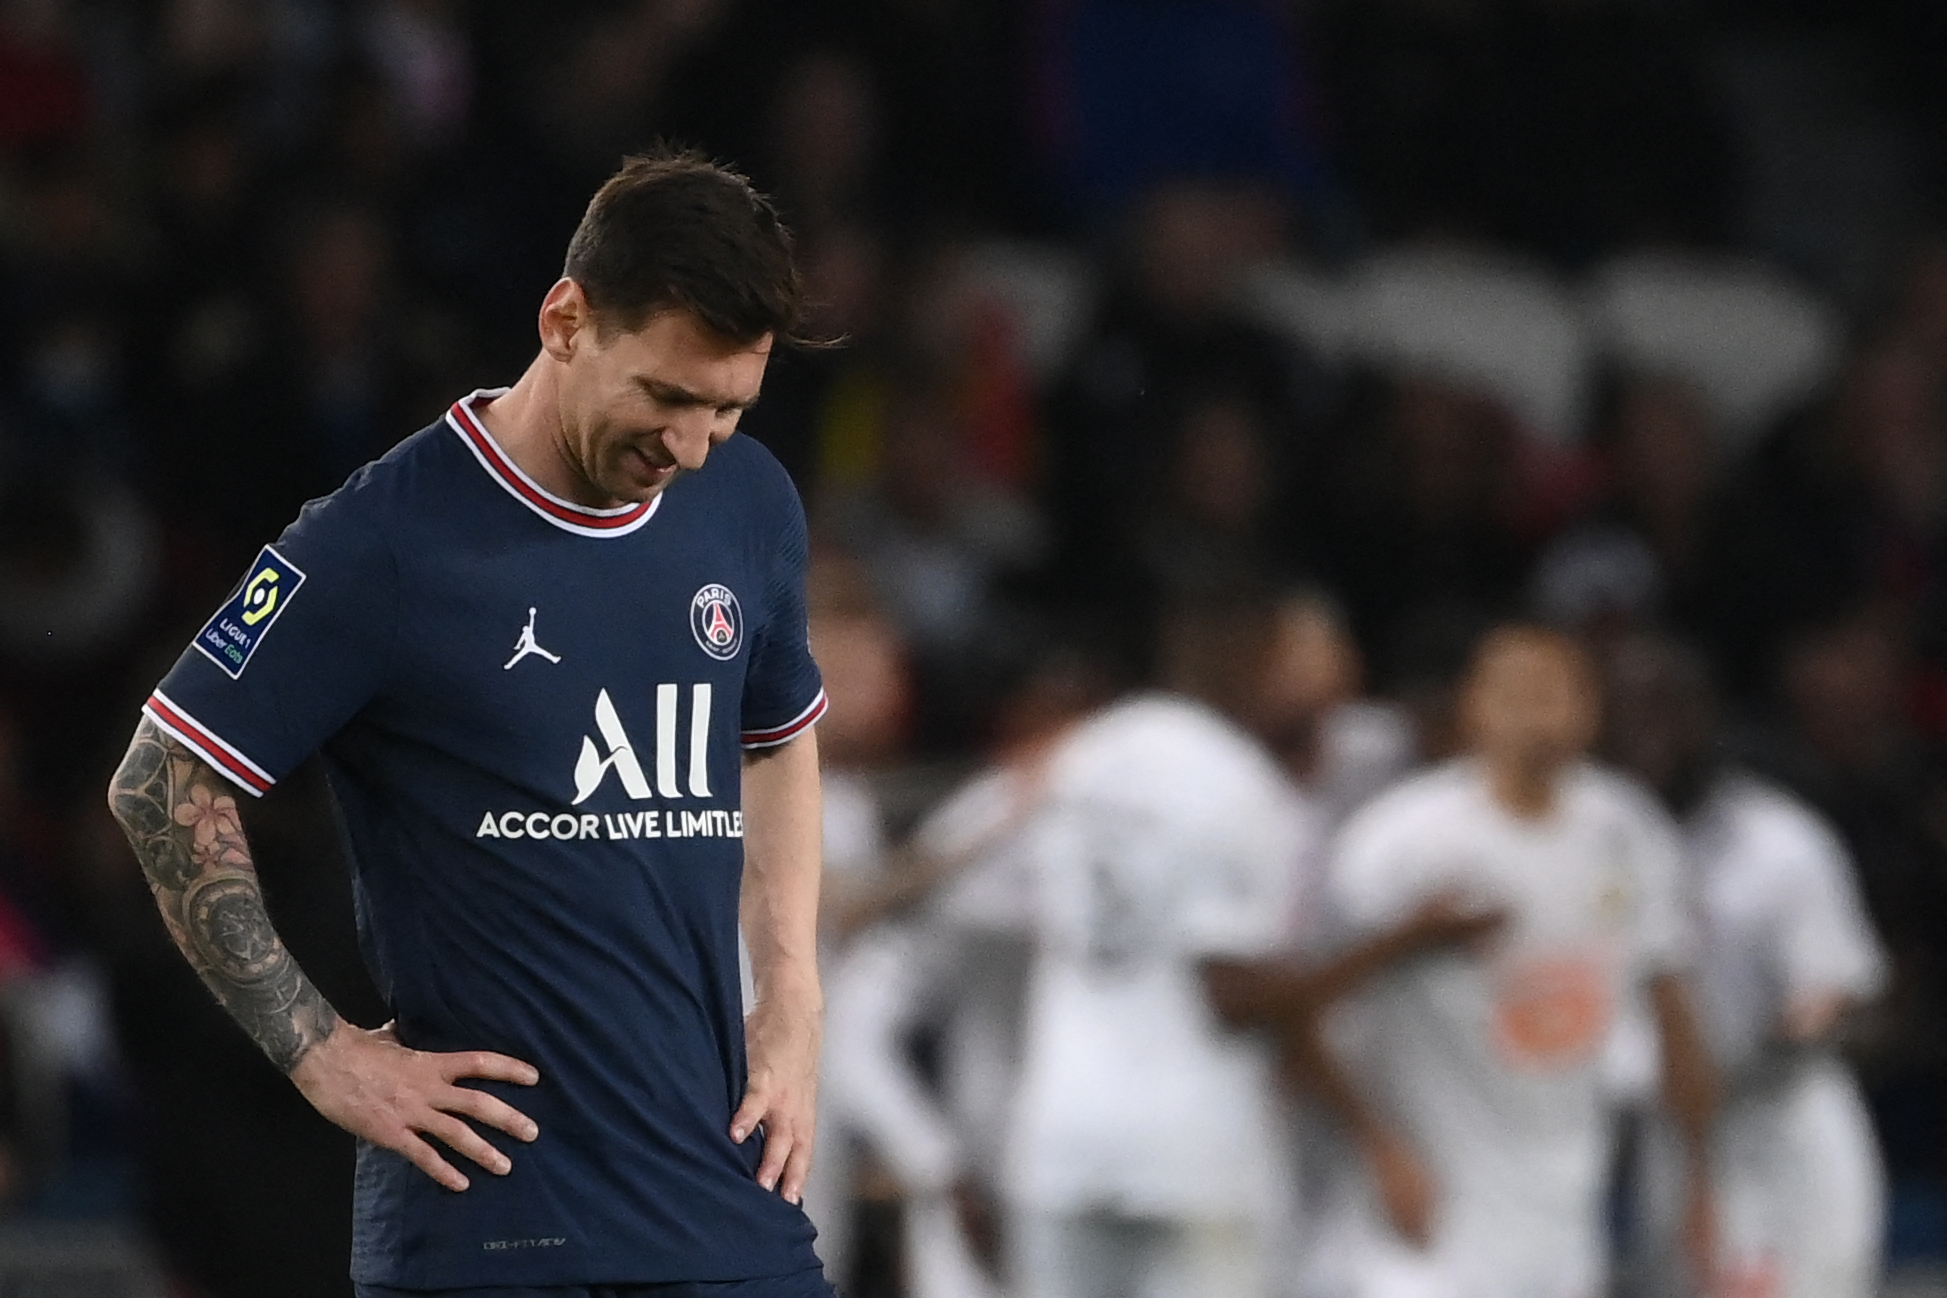 Lionel Messi reacciona después del gol del Lille en la primera parte. En la etapa de complemento ya no regresó al terreno de juego. Foto Prensa Libre: AFP.